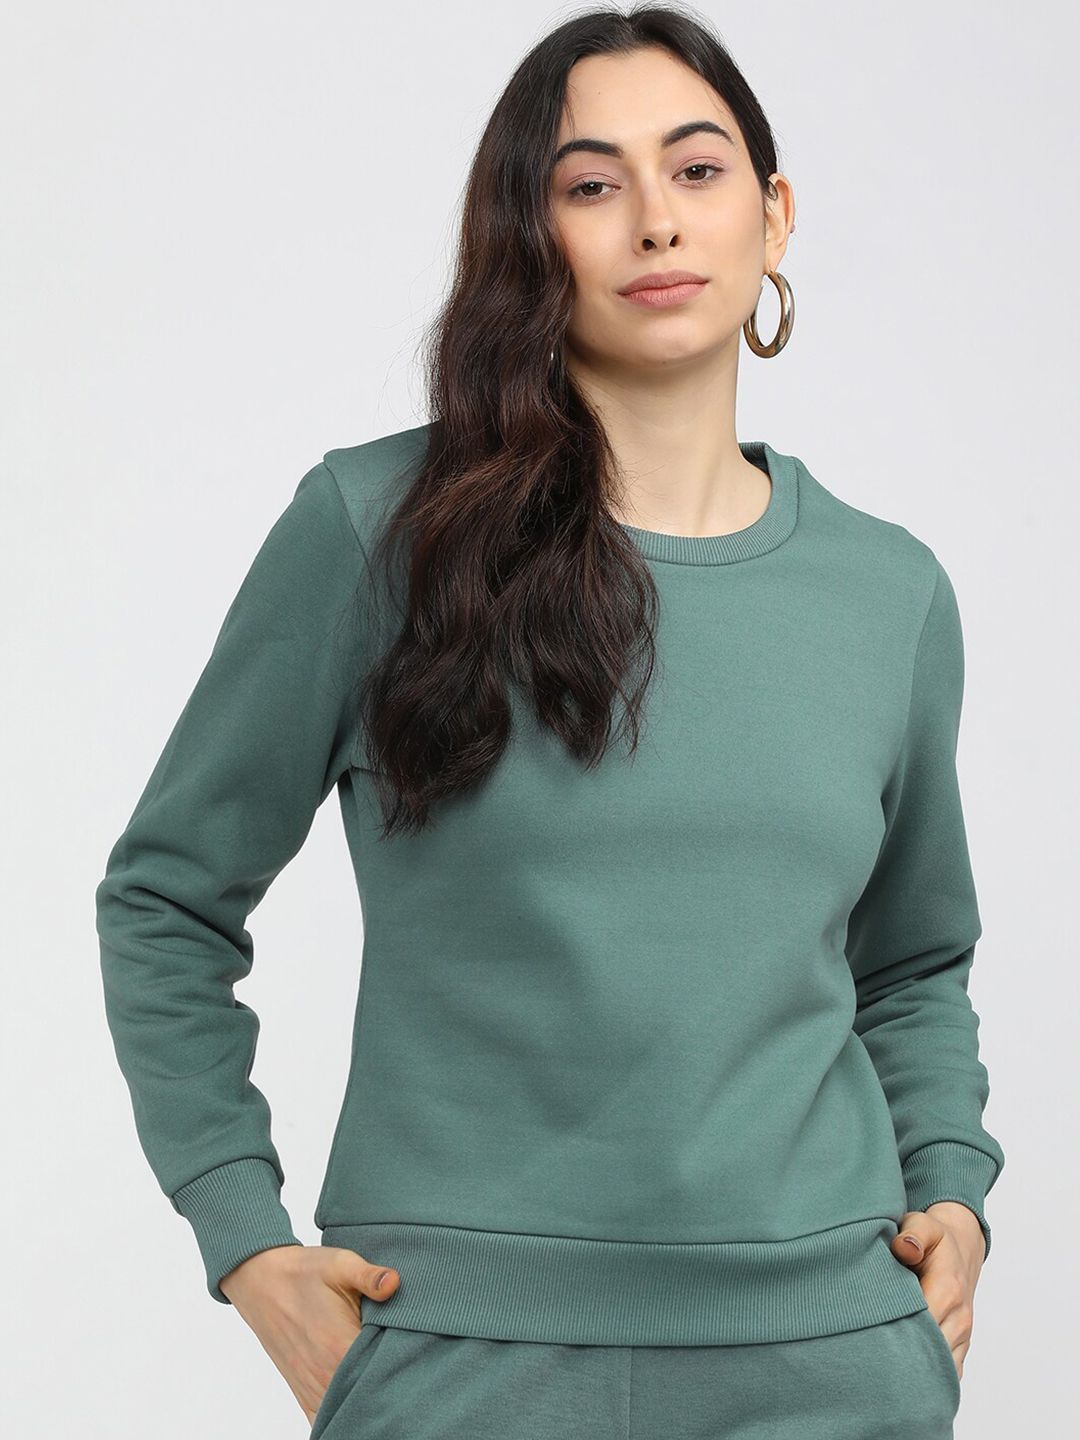 Tokyo Talkies Women Green Solid Sweatshirt Price in India